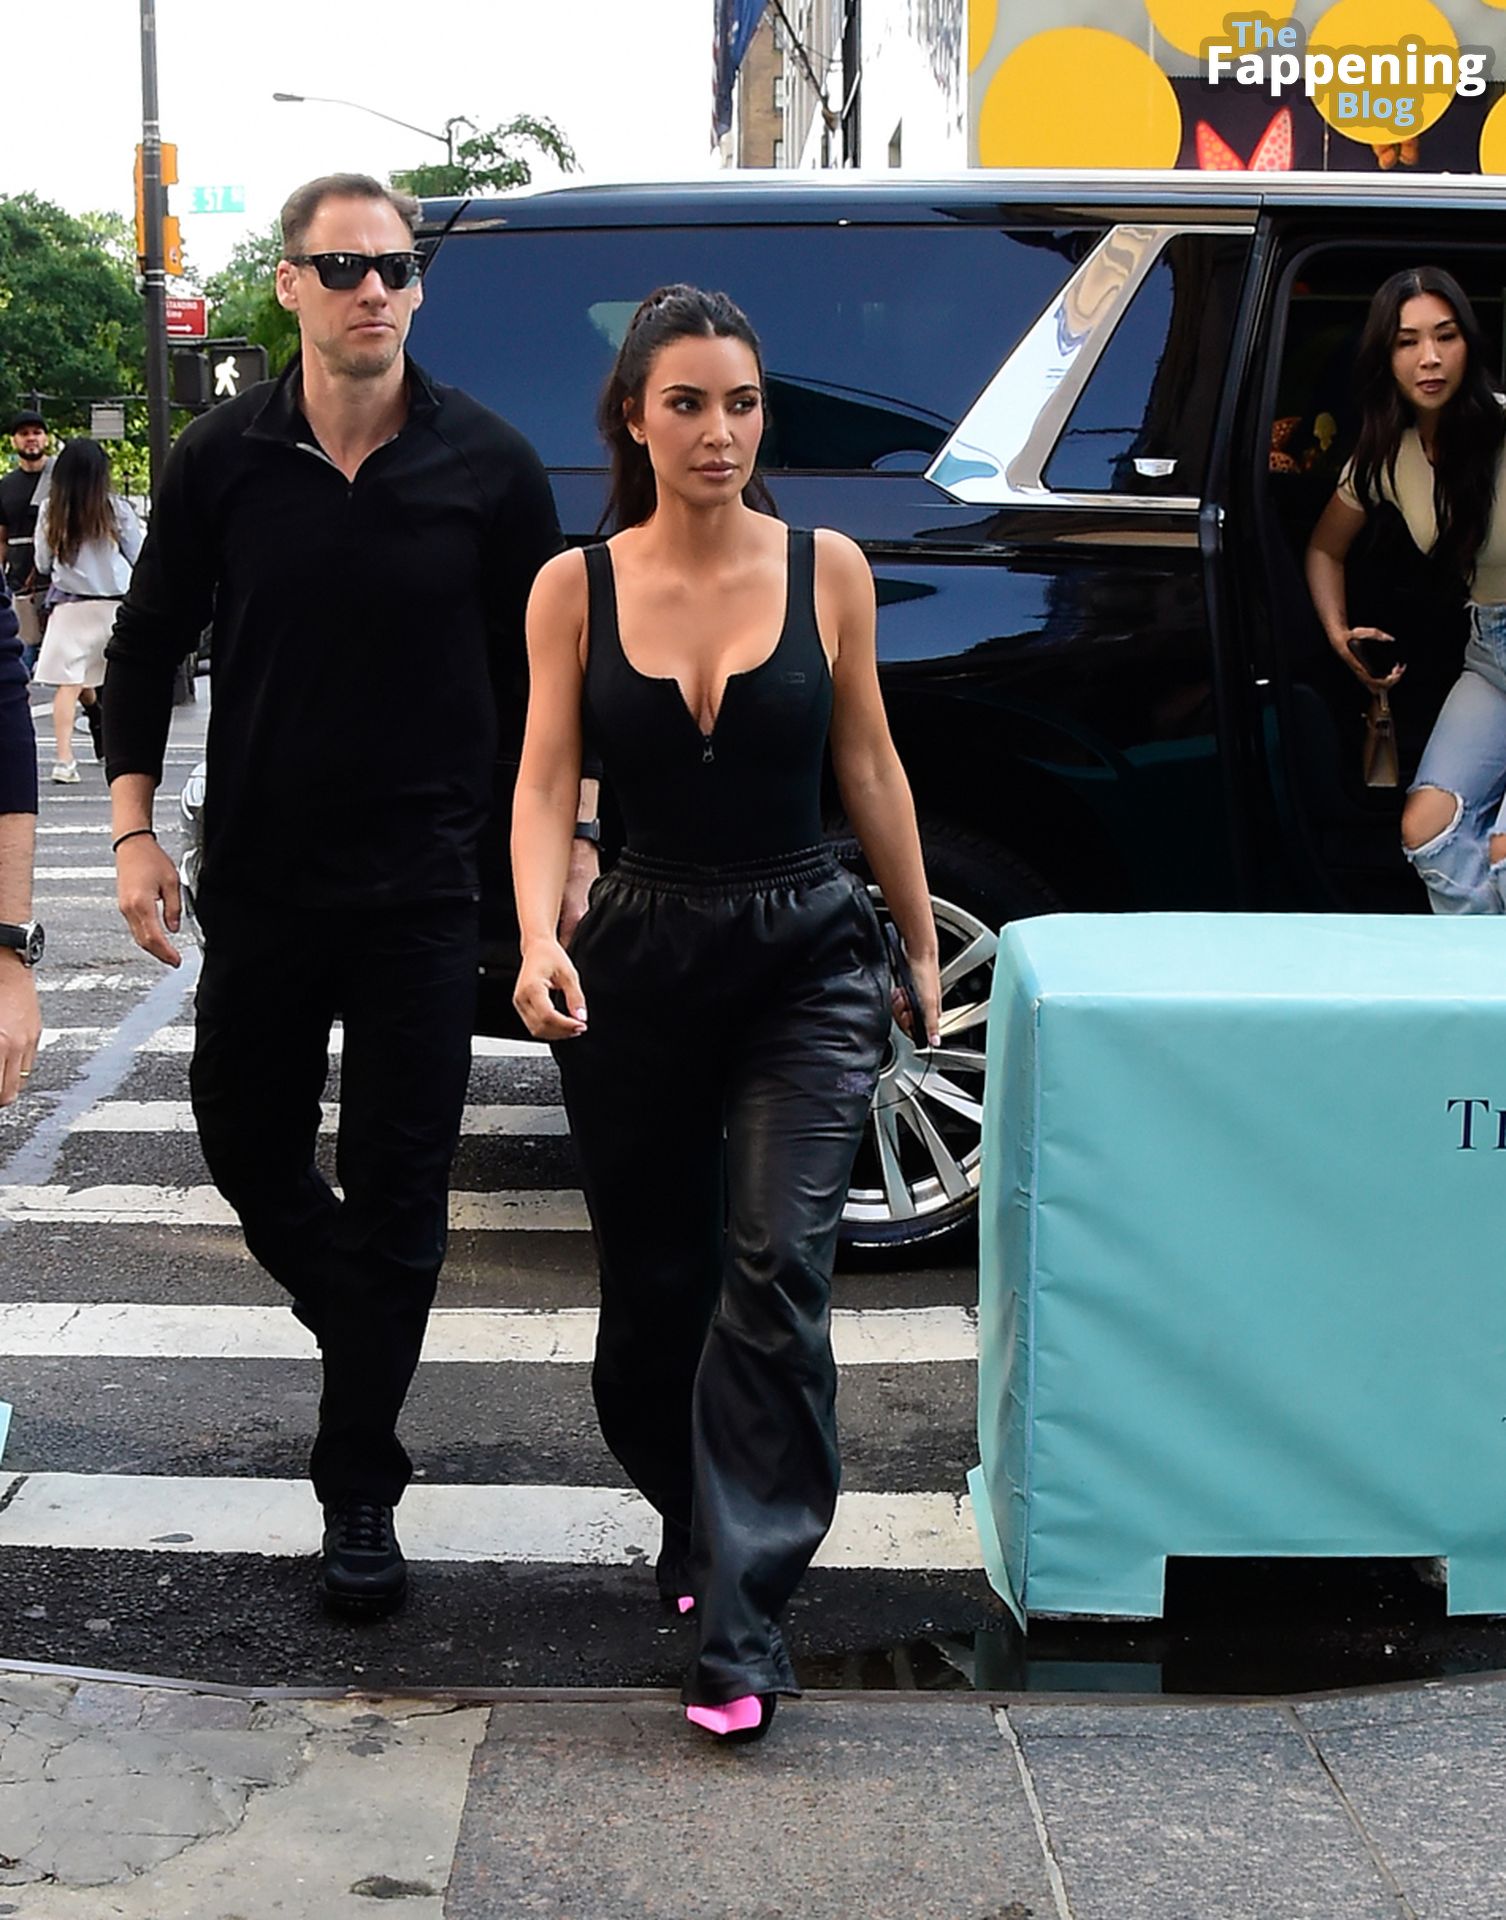 Kim-Kardashian-Sexy-The-Fappening-Blog-126-1.jpg